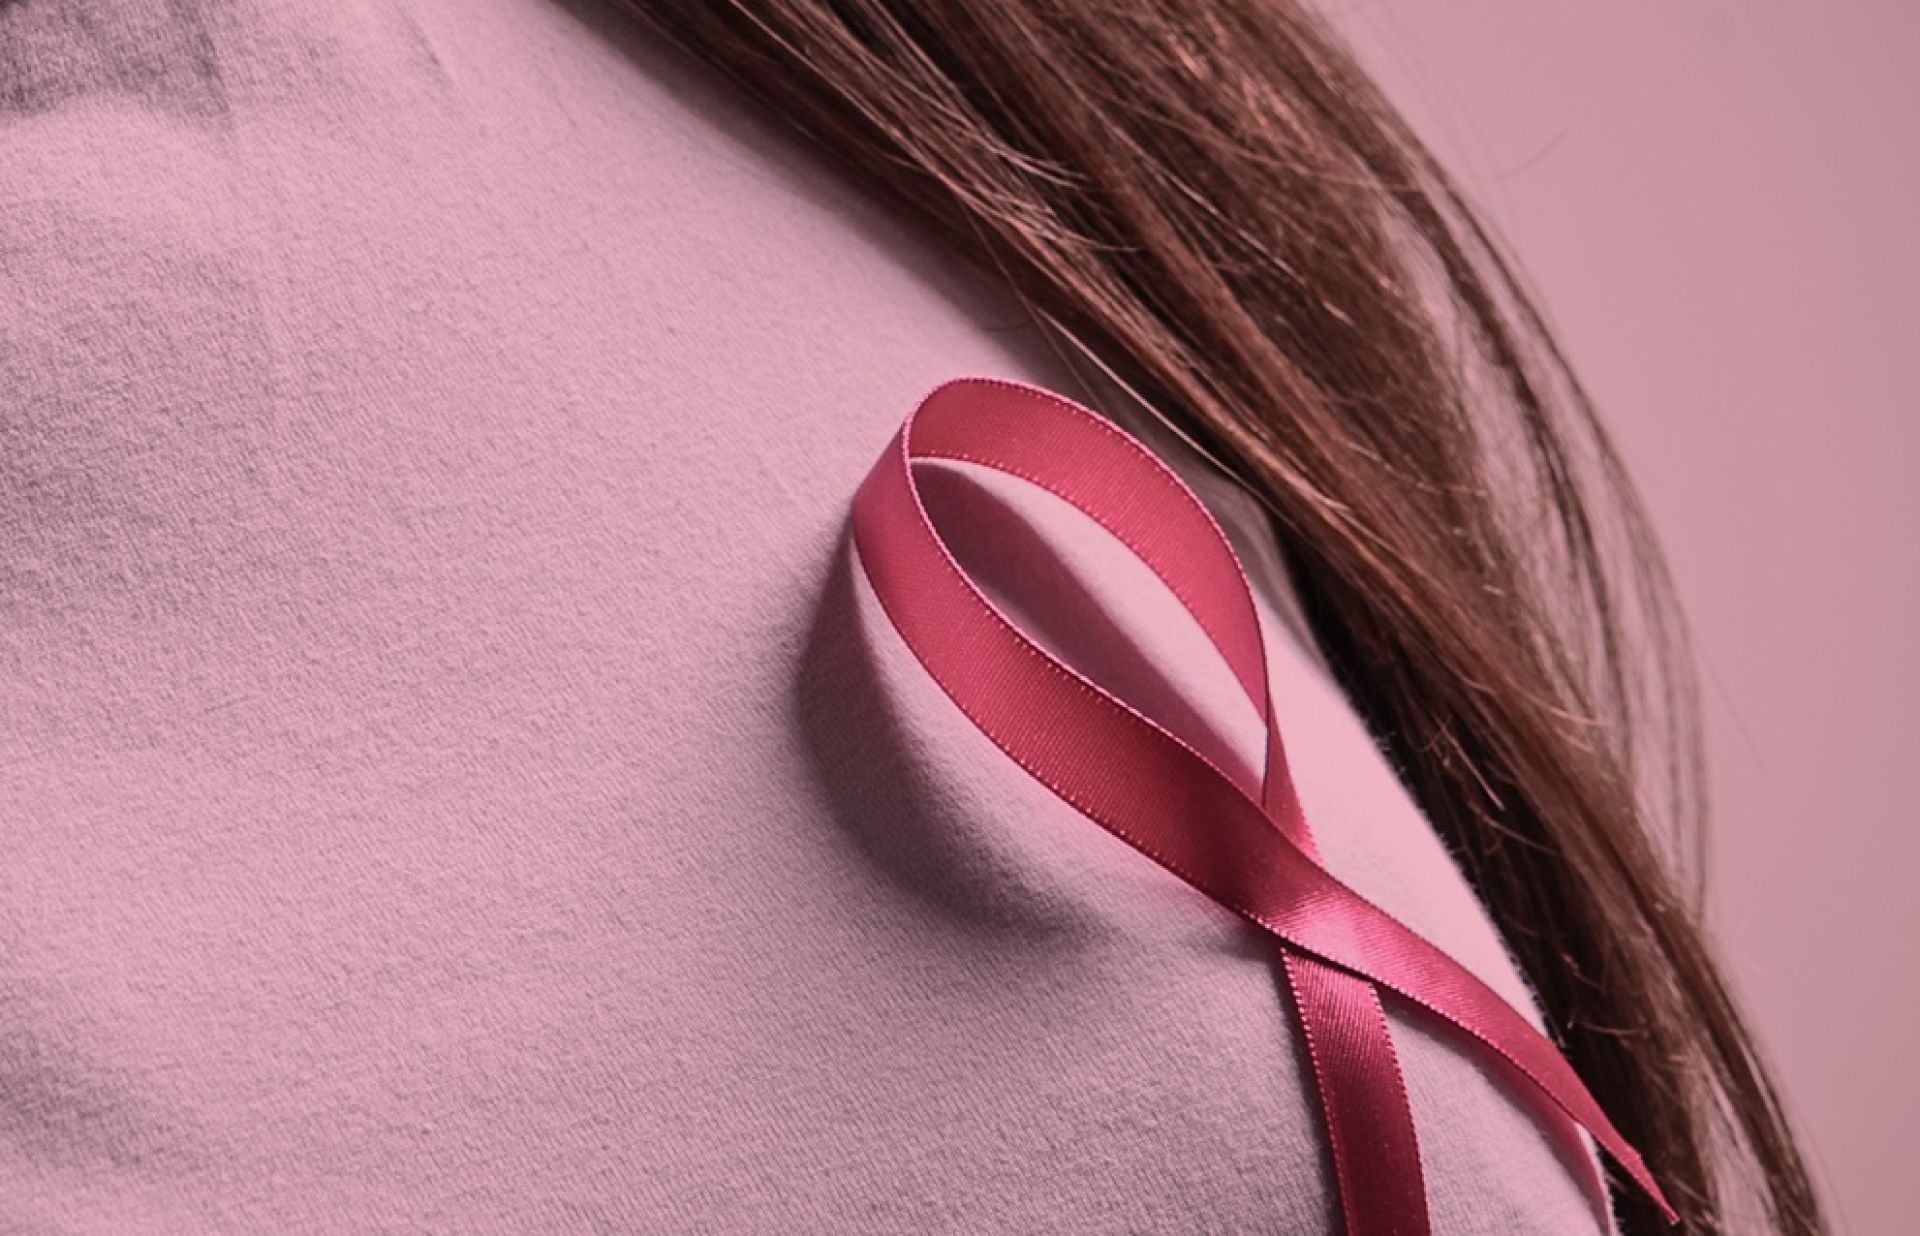 Ποιο είναι το κλειδί για να νικηθεί ο καρκίνος του μαστού κατά κράτος;